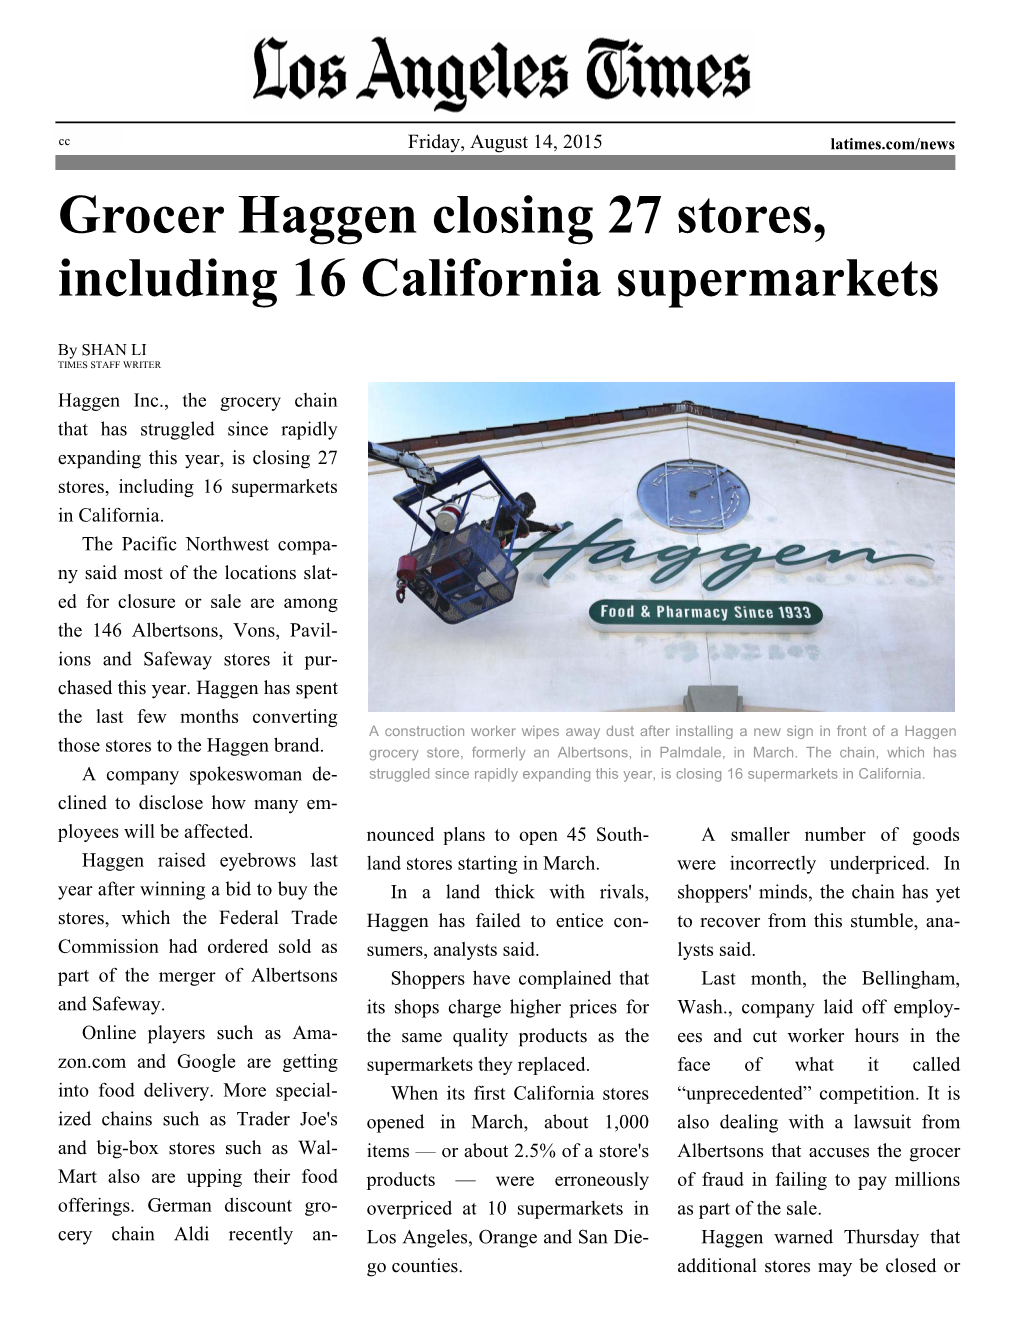 Grocer Haggen Closing 27 Stores LAT 081415.Pub